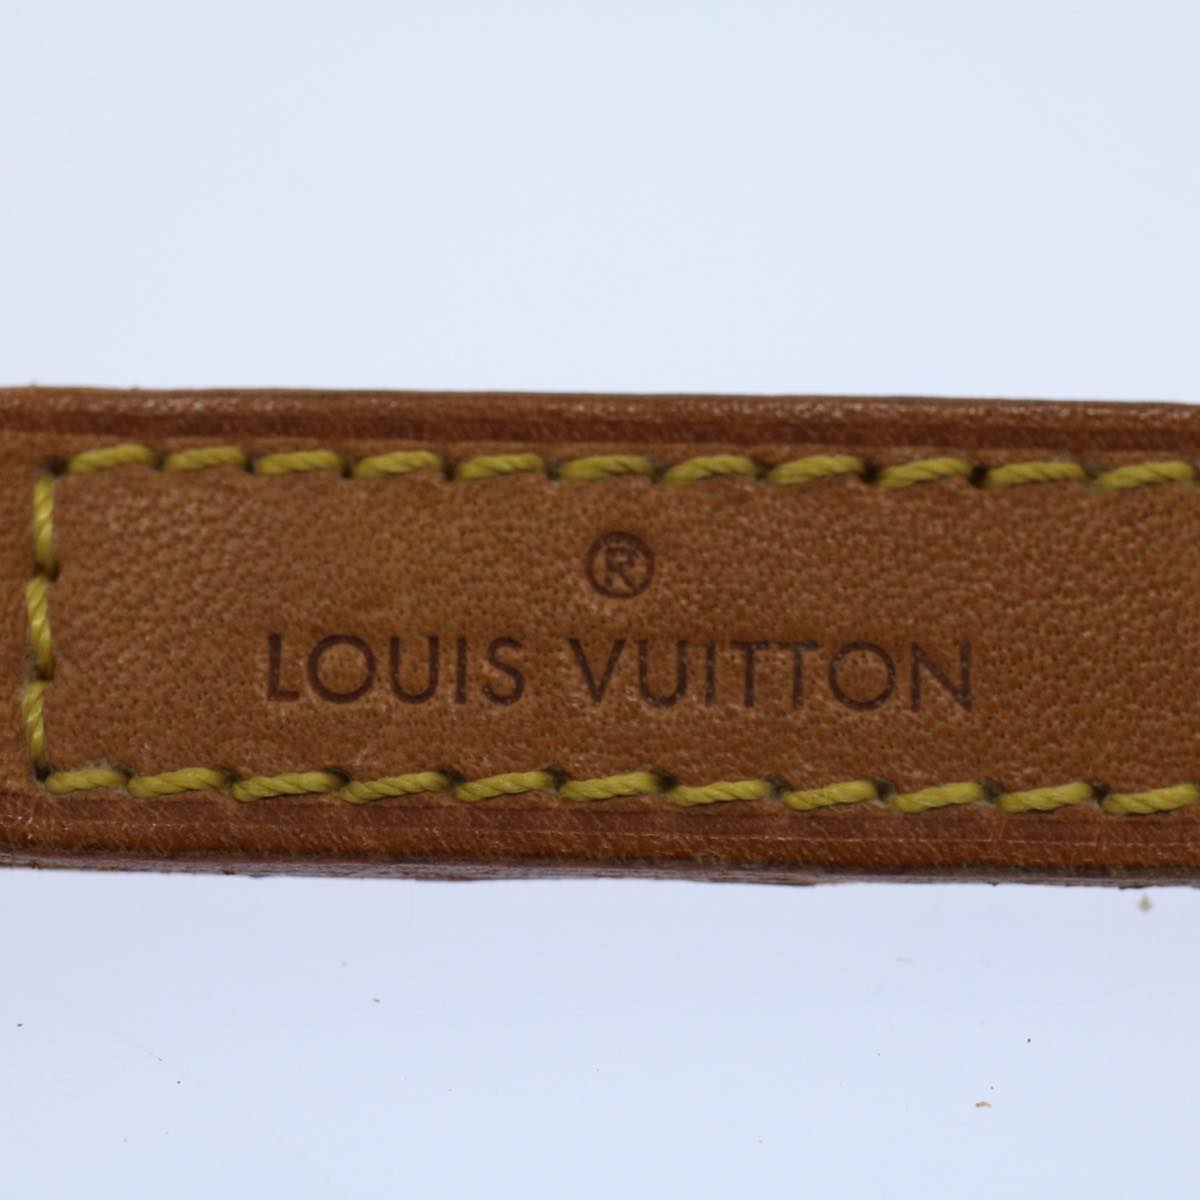 LOUIS VUITTON Shoulder Strap Leather 35.4"" Beige LV Auth bs8331